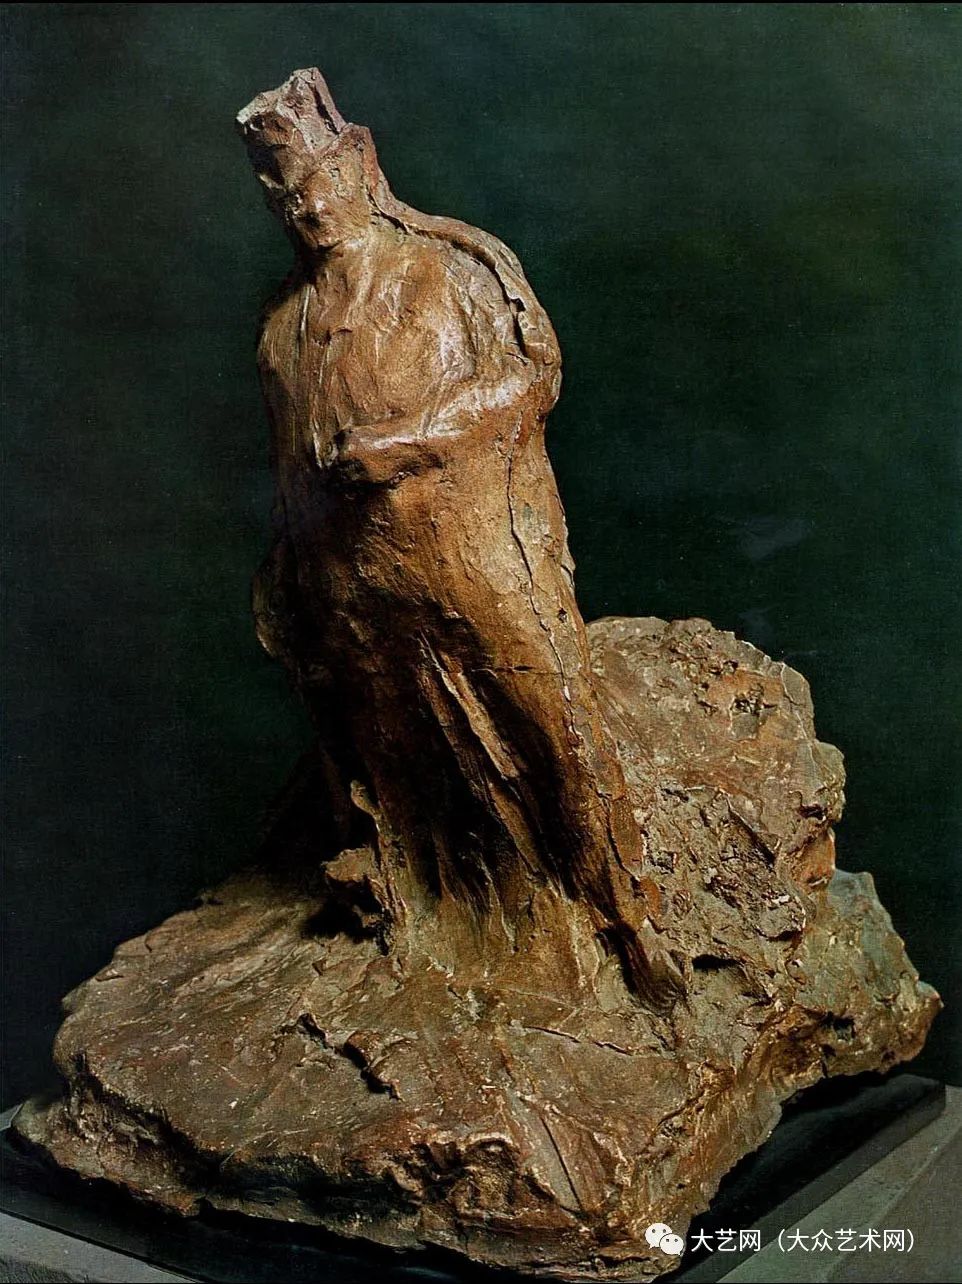 大众艺术网创造朦胧永恒的后印象派雕塑大师意大利雕塑家梅德尔多罗索